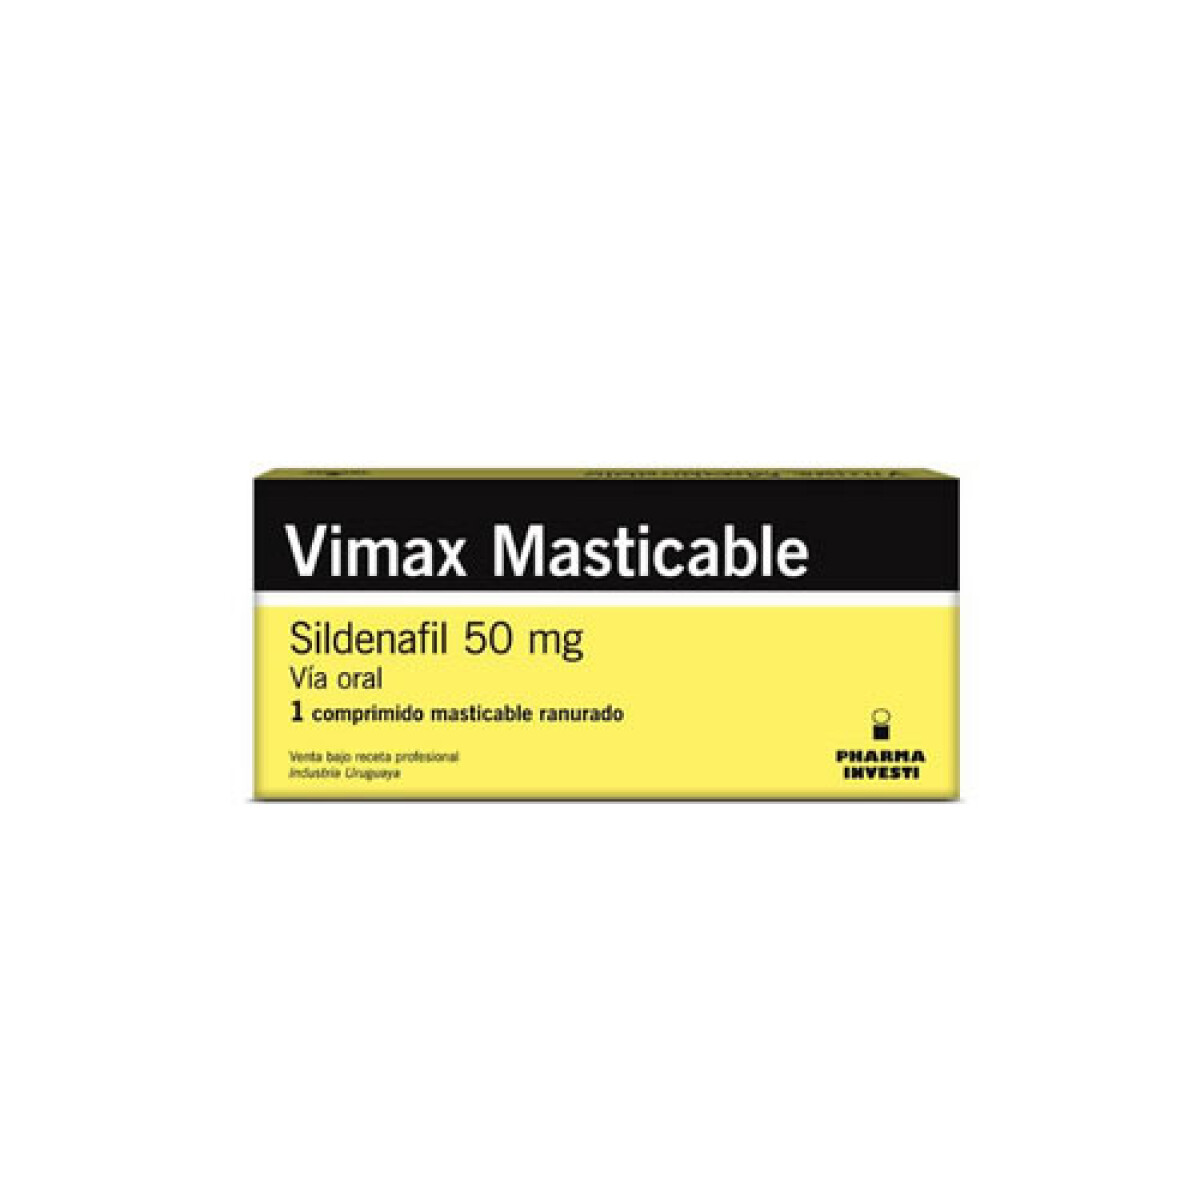 VIMAX MASTICABLE 50 MG 1 COMP 